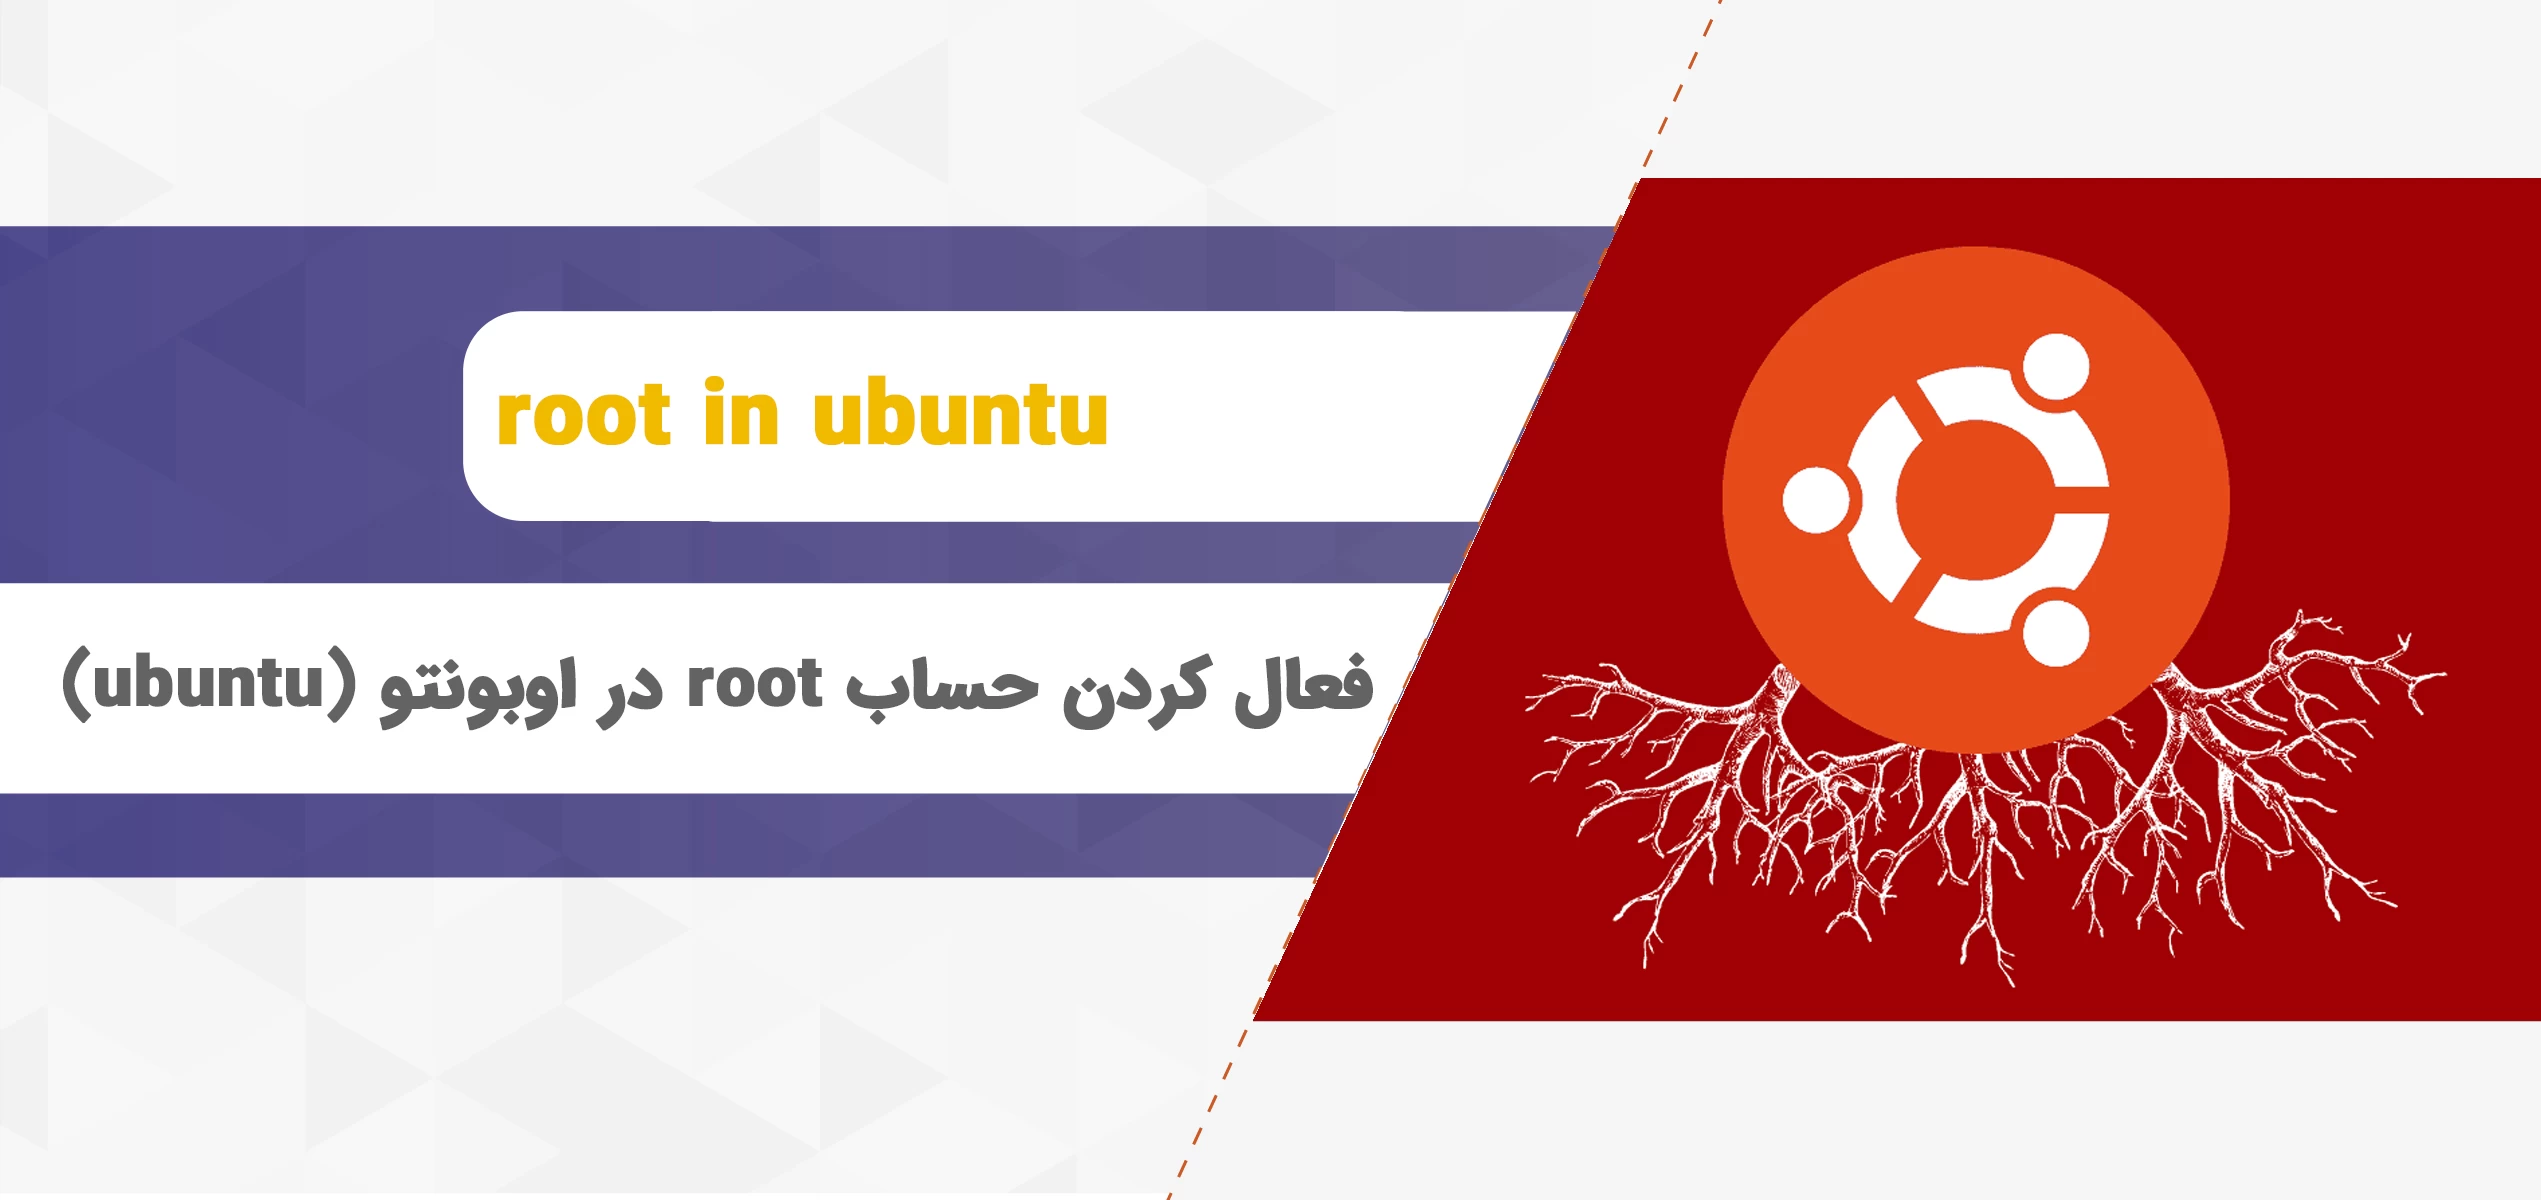 فعال کردن حساب root در ubuntu